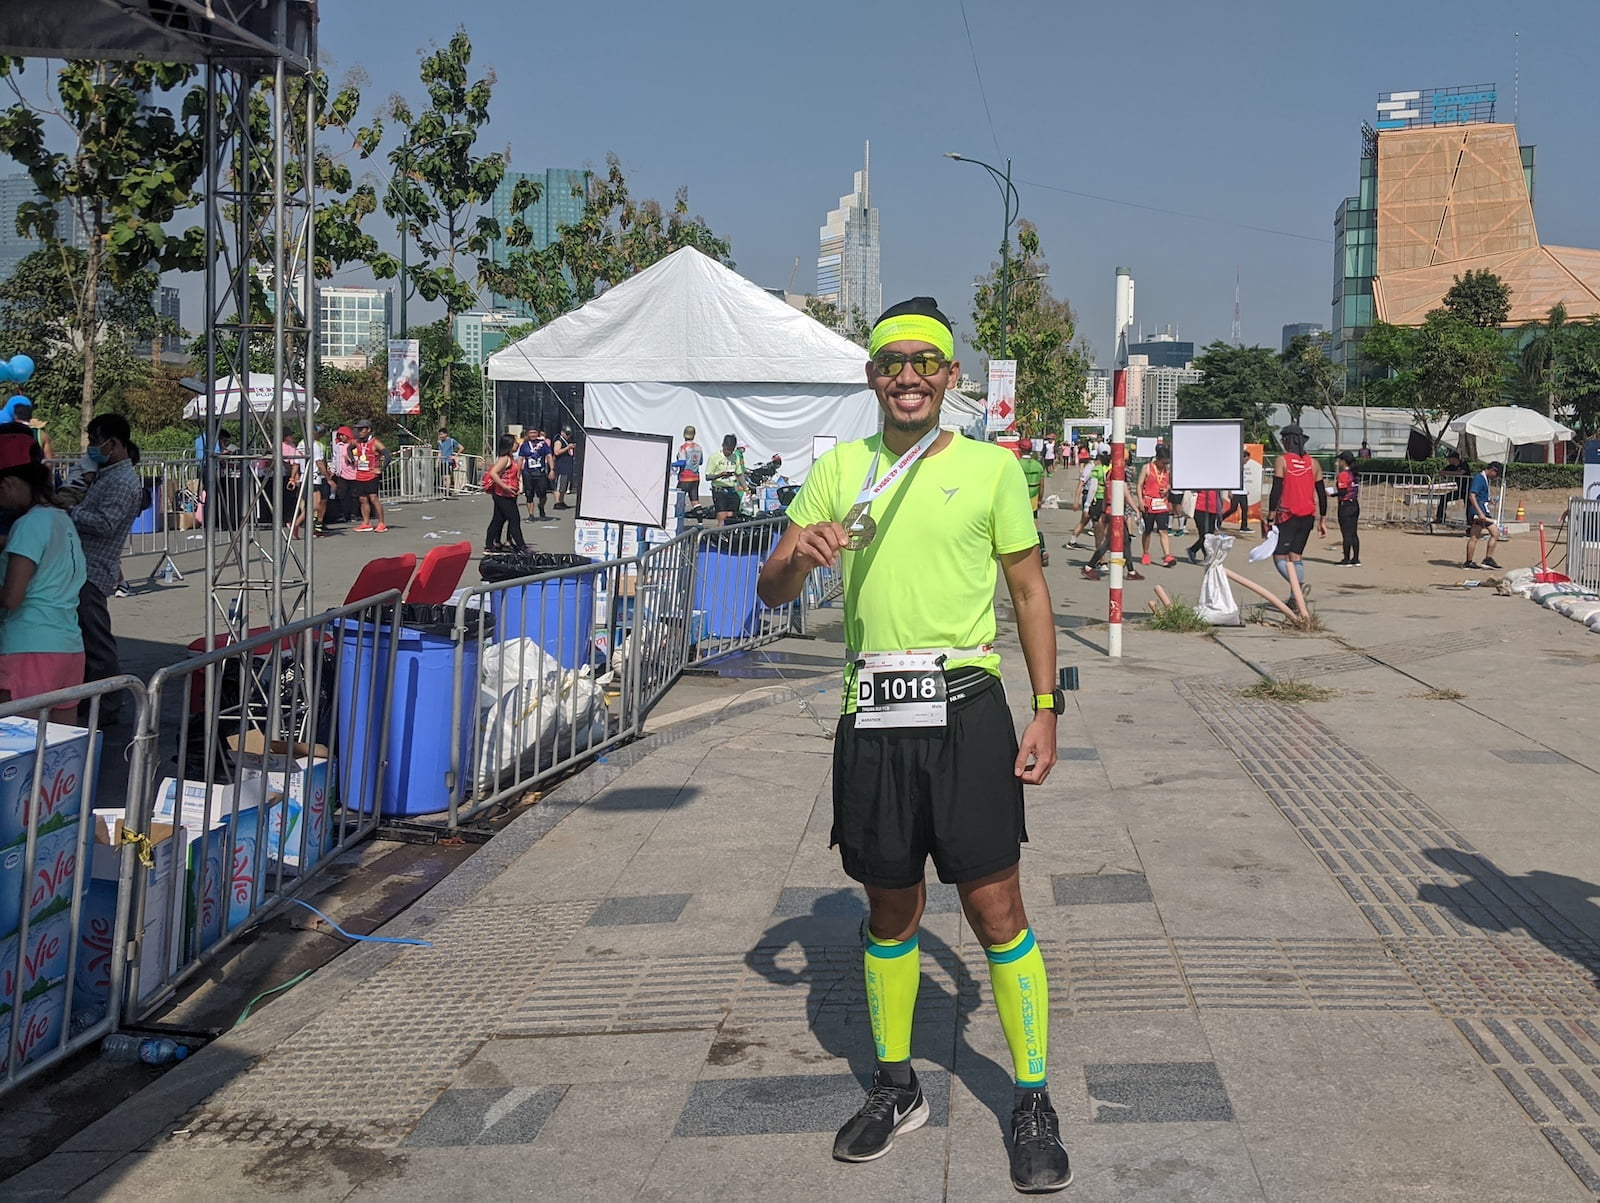 Kí sự HCMC International Marathon 2019 - Lần 2 chinh phục Full Marathon trên đường nhựa - ki su hcmc marathon 2019 6